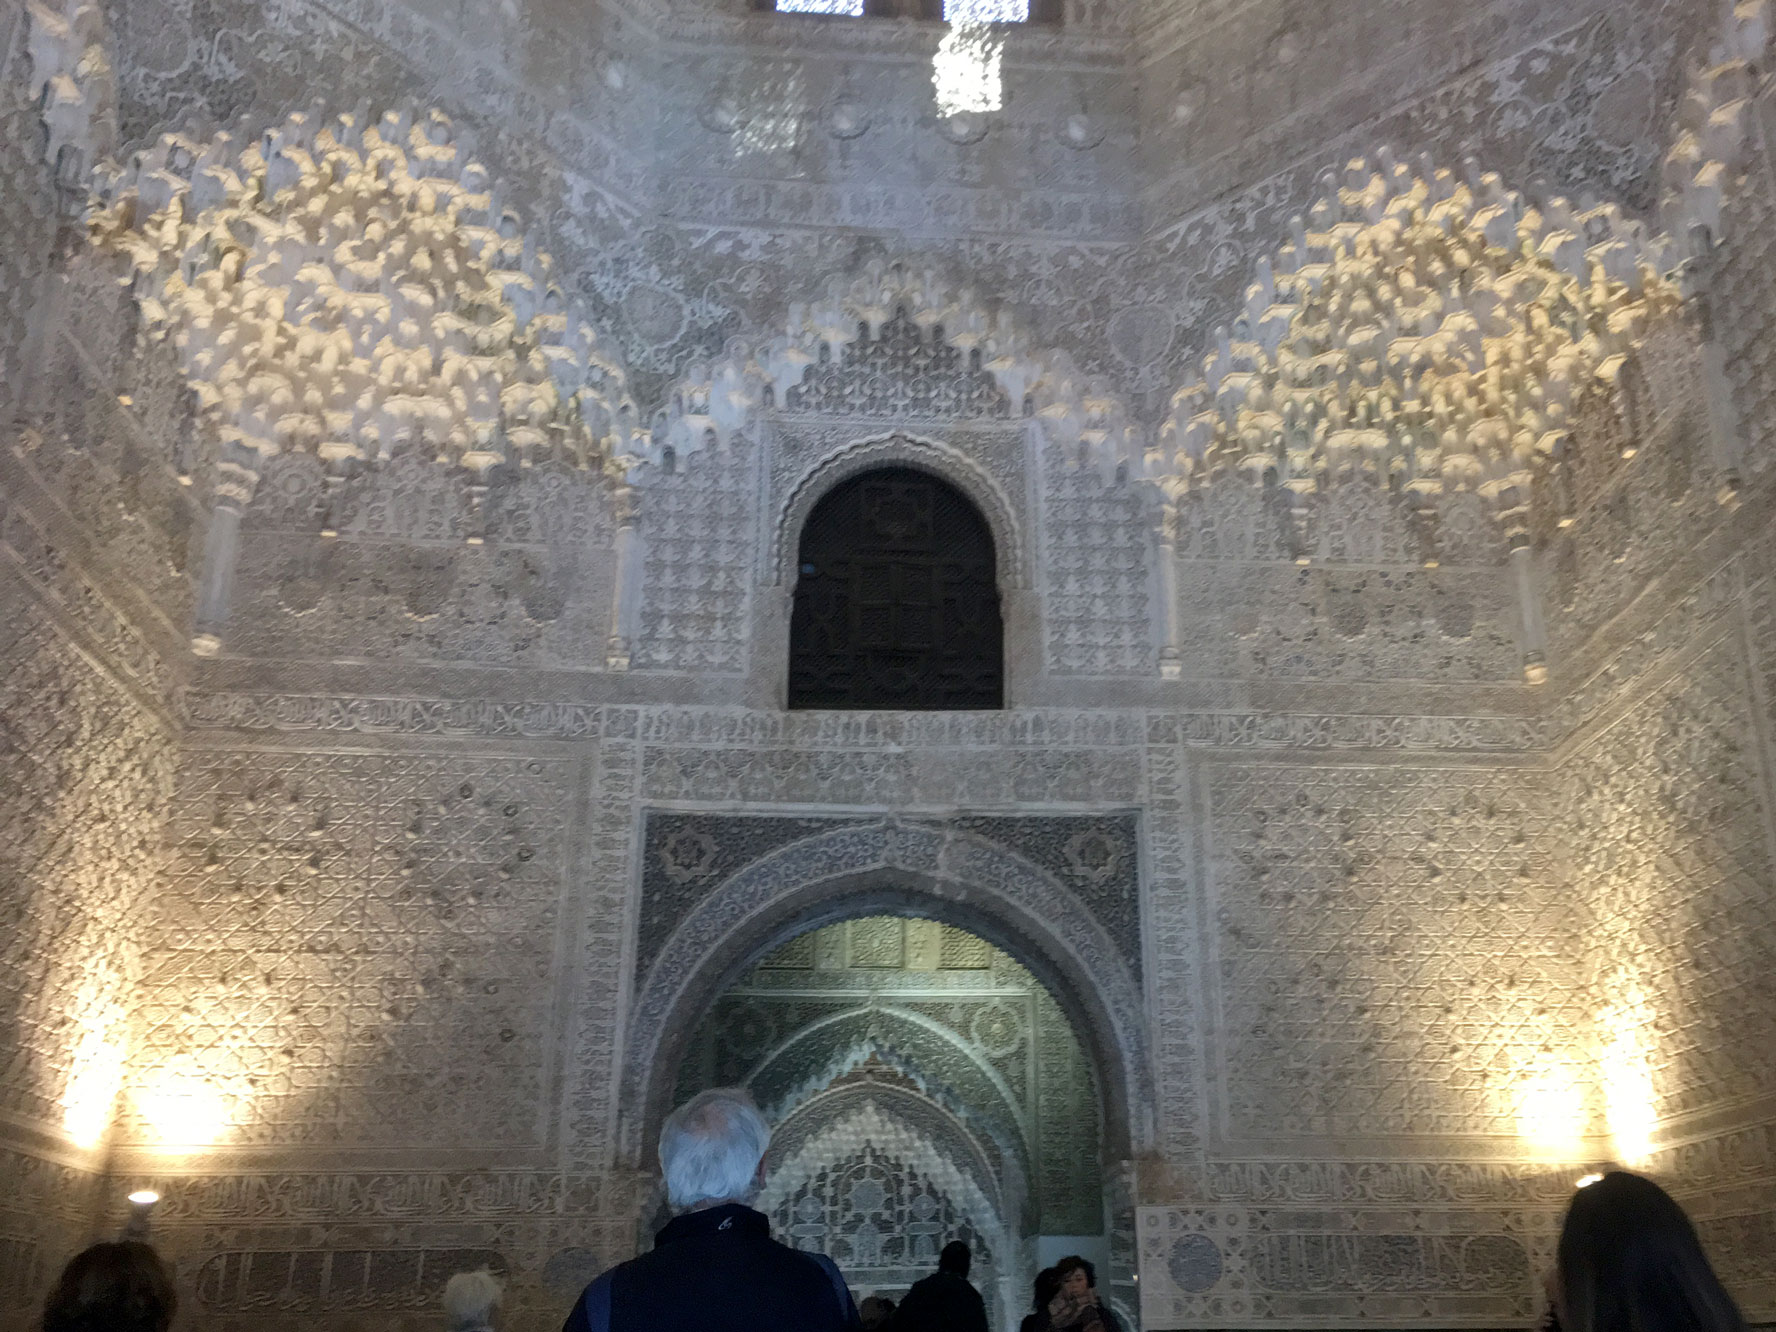 caves-inside-alhambra